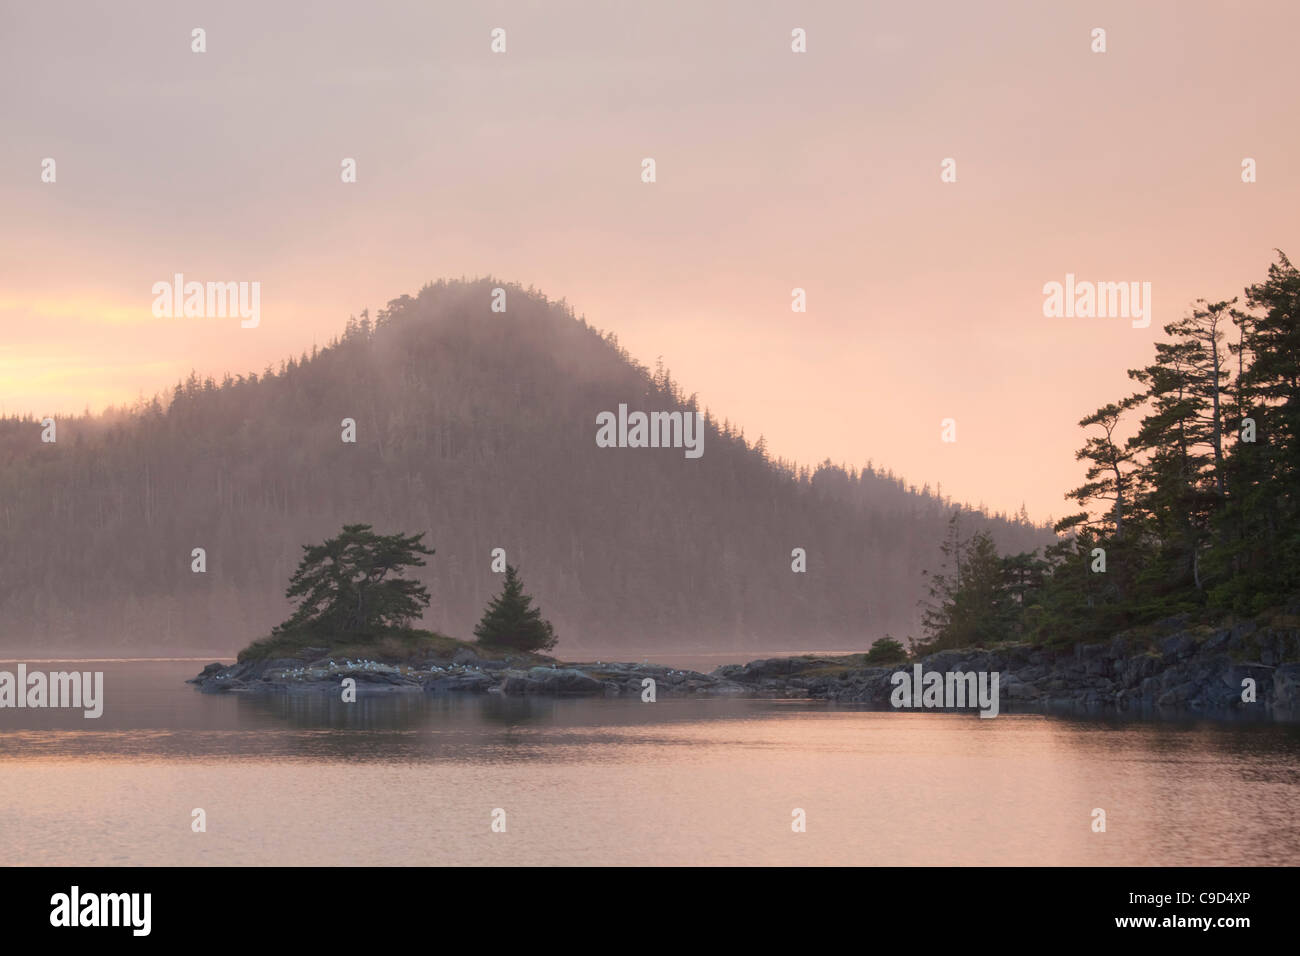 Stretto con le isole in background, Broughton Island, isola di villaggio, British Columbia, Canada Foto Stock